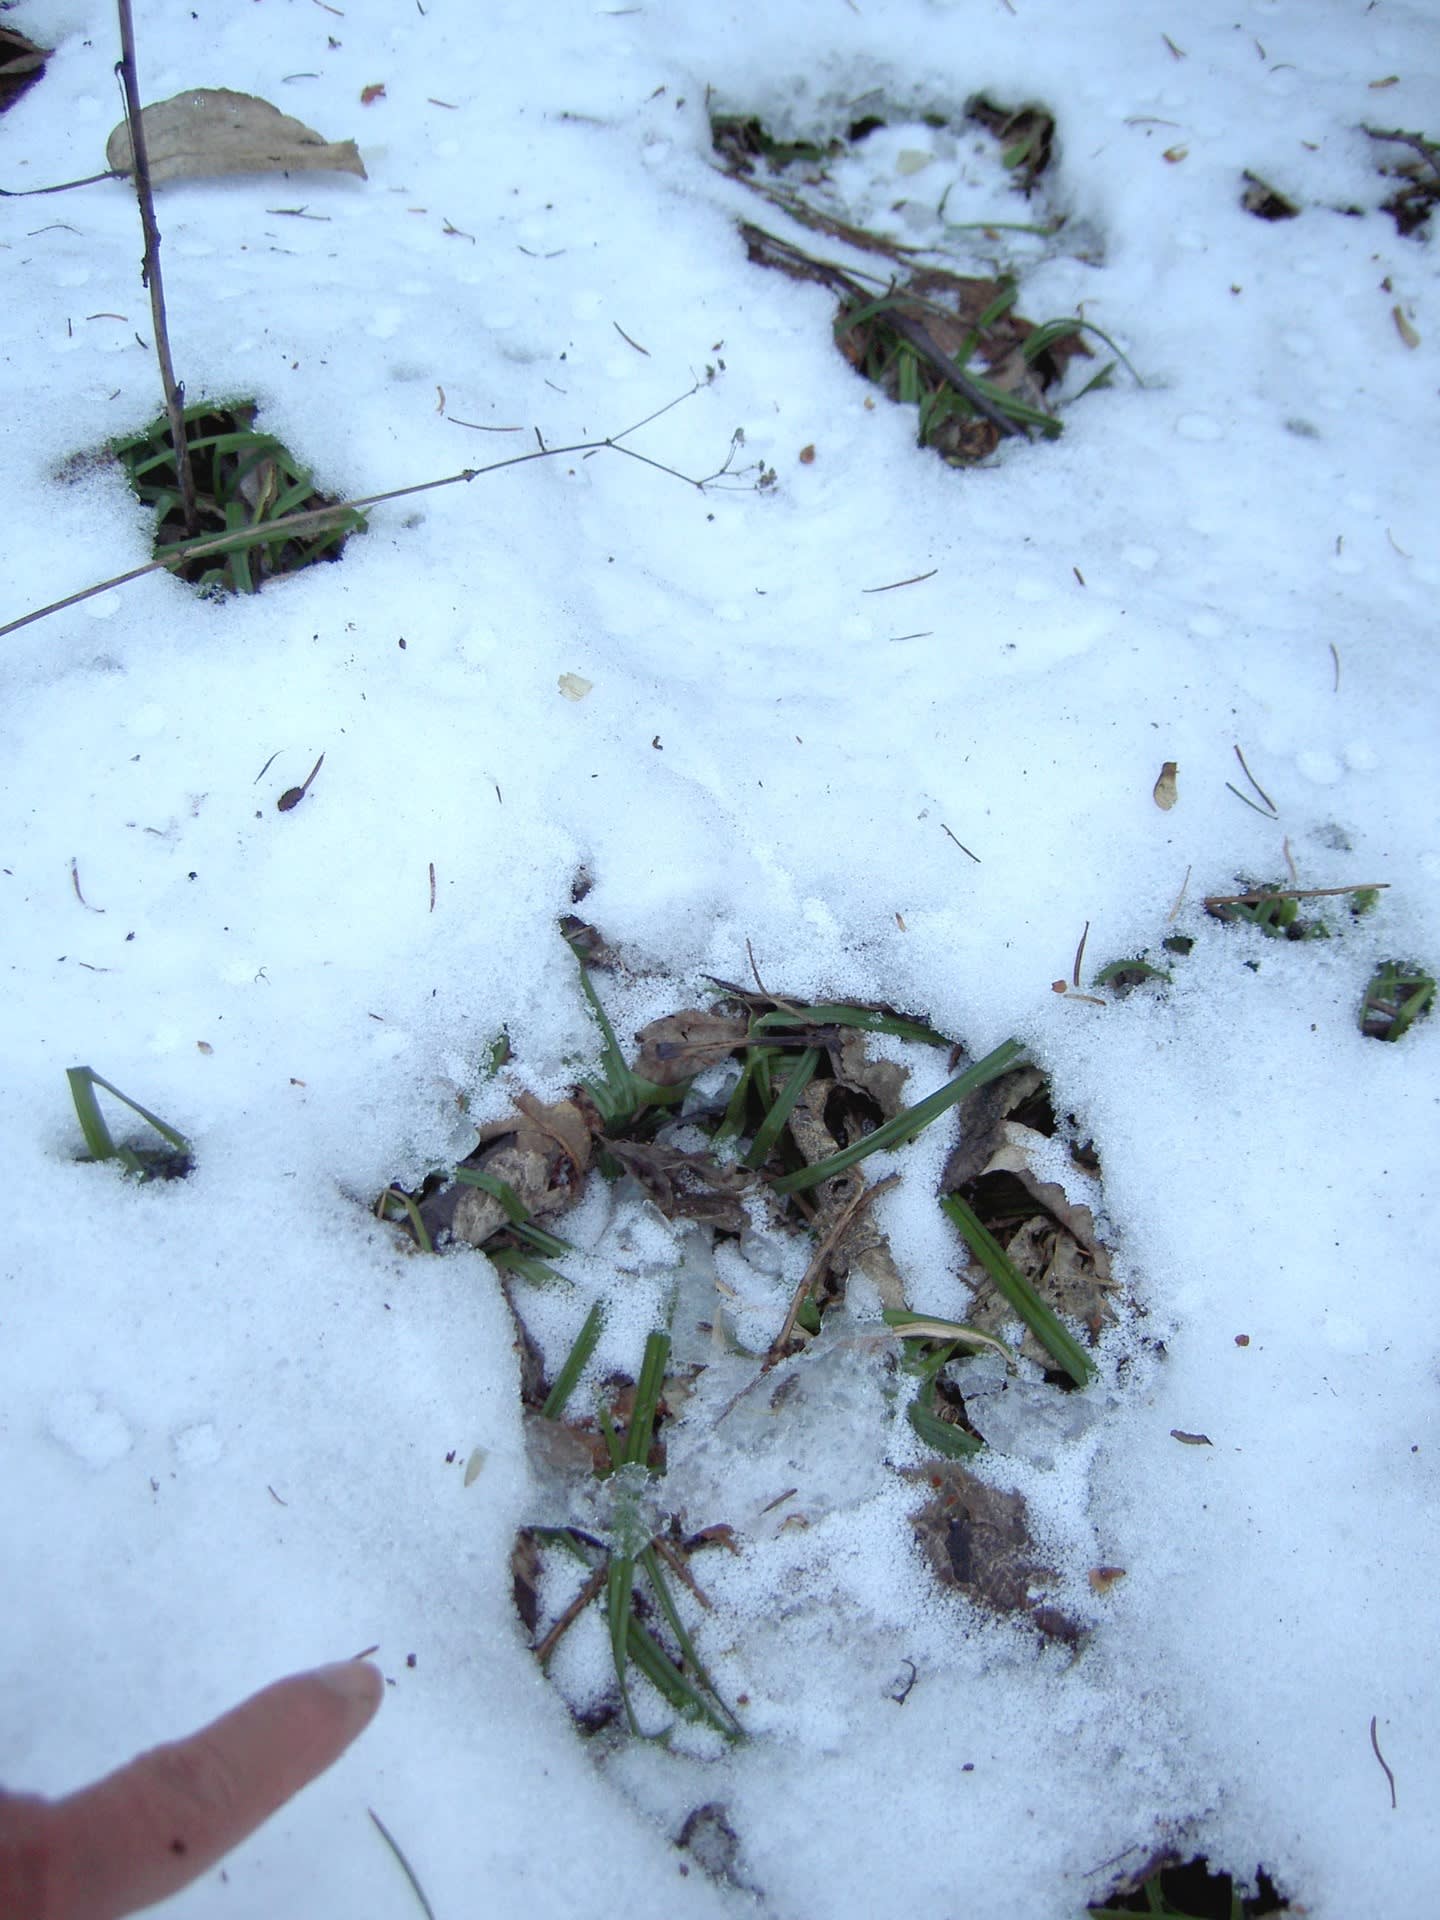 真冬の北海道 ヒグマに襲われ死亡 オショロコマの森ブログ5